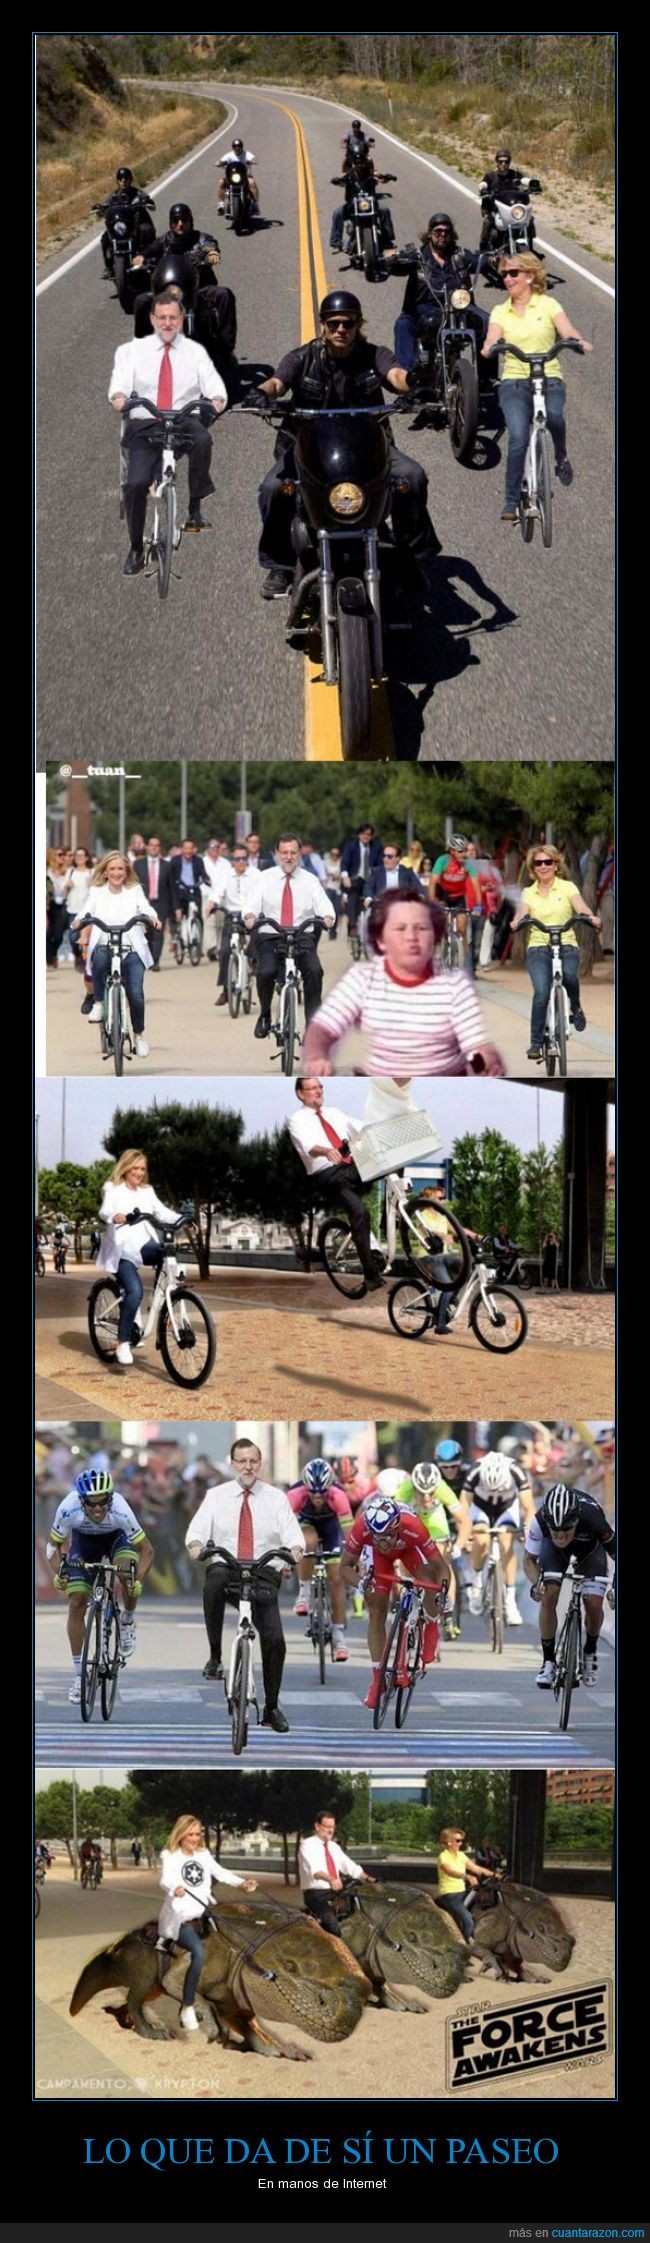 bici,bicileta,Chanquete,chop,cifuentes,esperanza aguirre,indurain,Mariano Rajoy,paseo,piraña,sons of anarchy,Star Wars,verano azul,vuelta ciclista